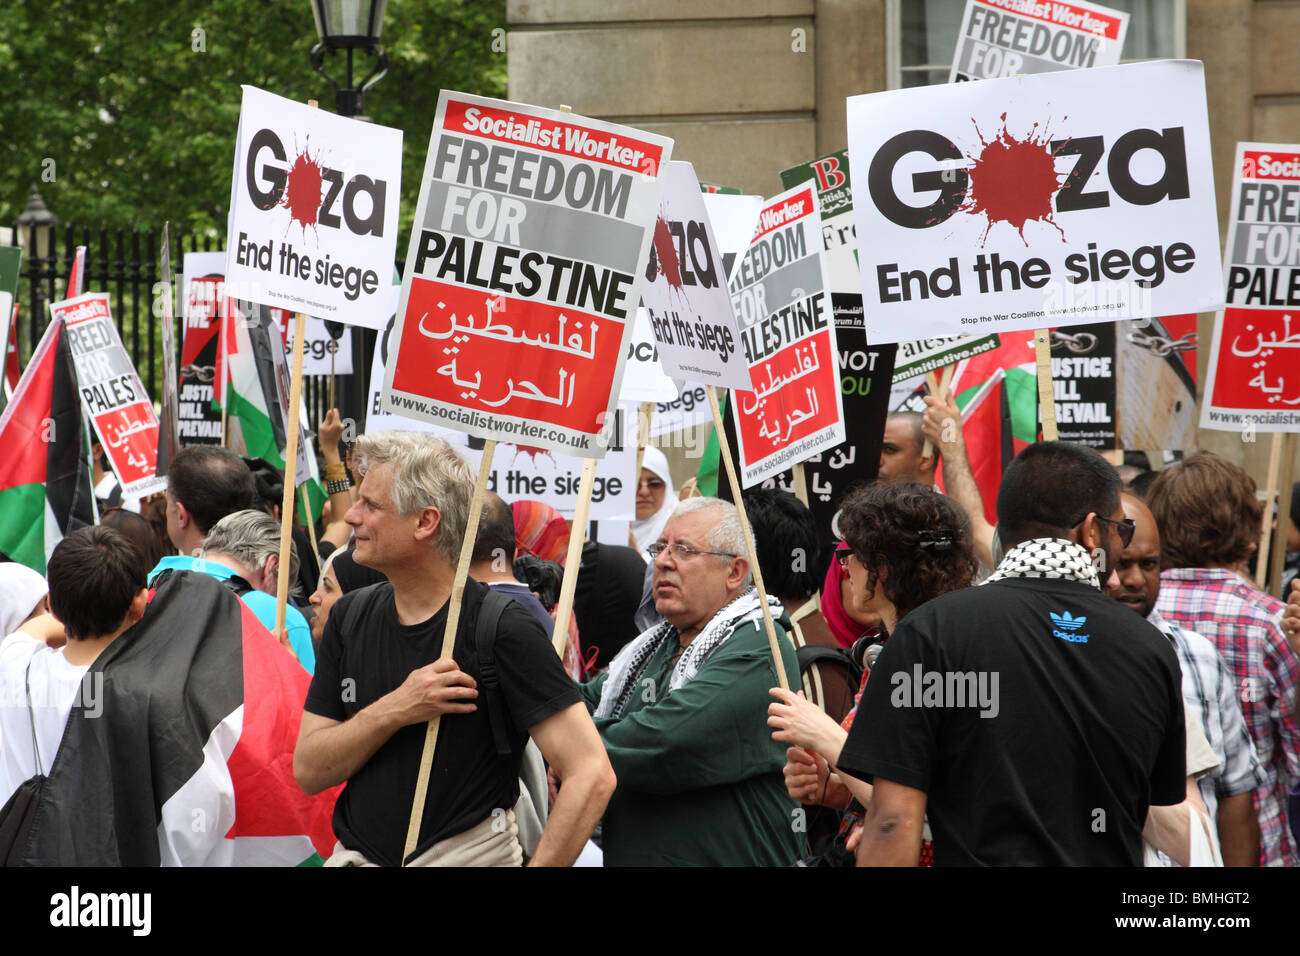 Des manifestants lors de la "Liberté pour la Palestine' démonstration sur Whitehall, Westminster, Londres, Angleterre, Royaume-Uni Banque D'Images